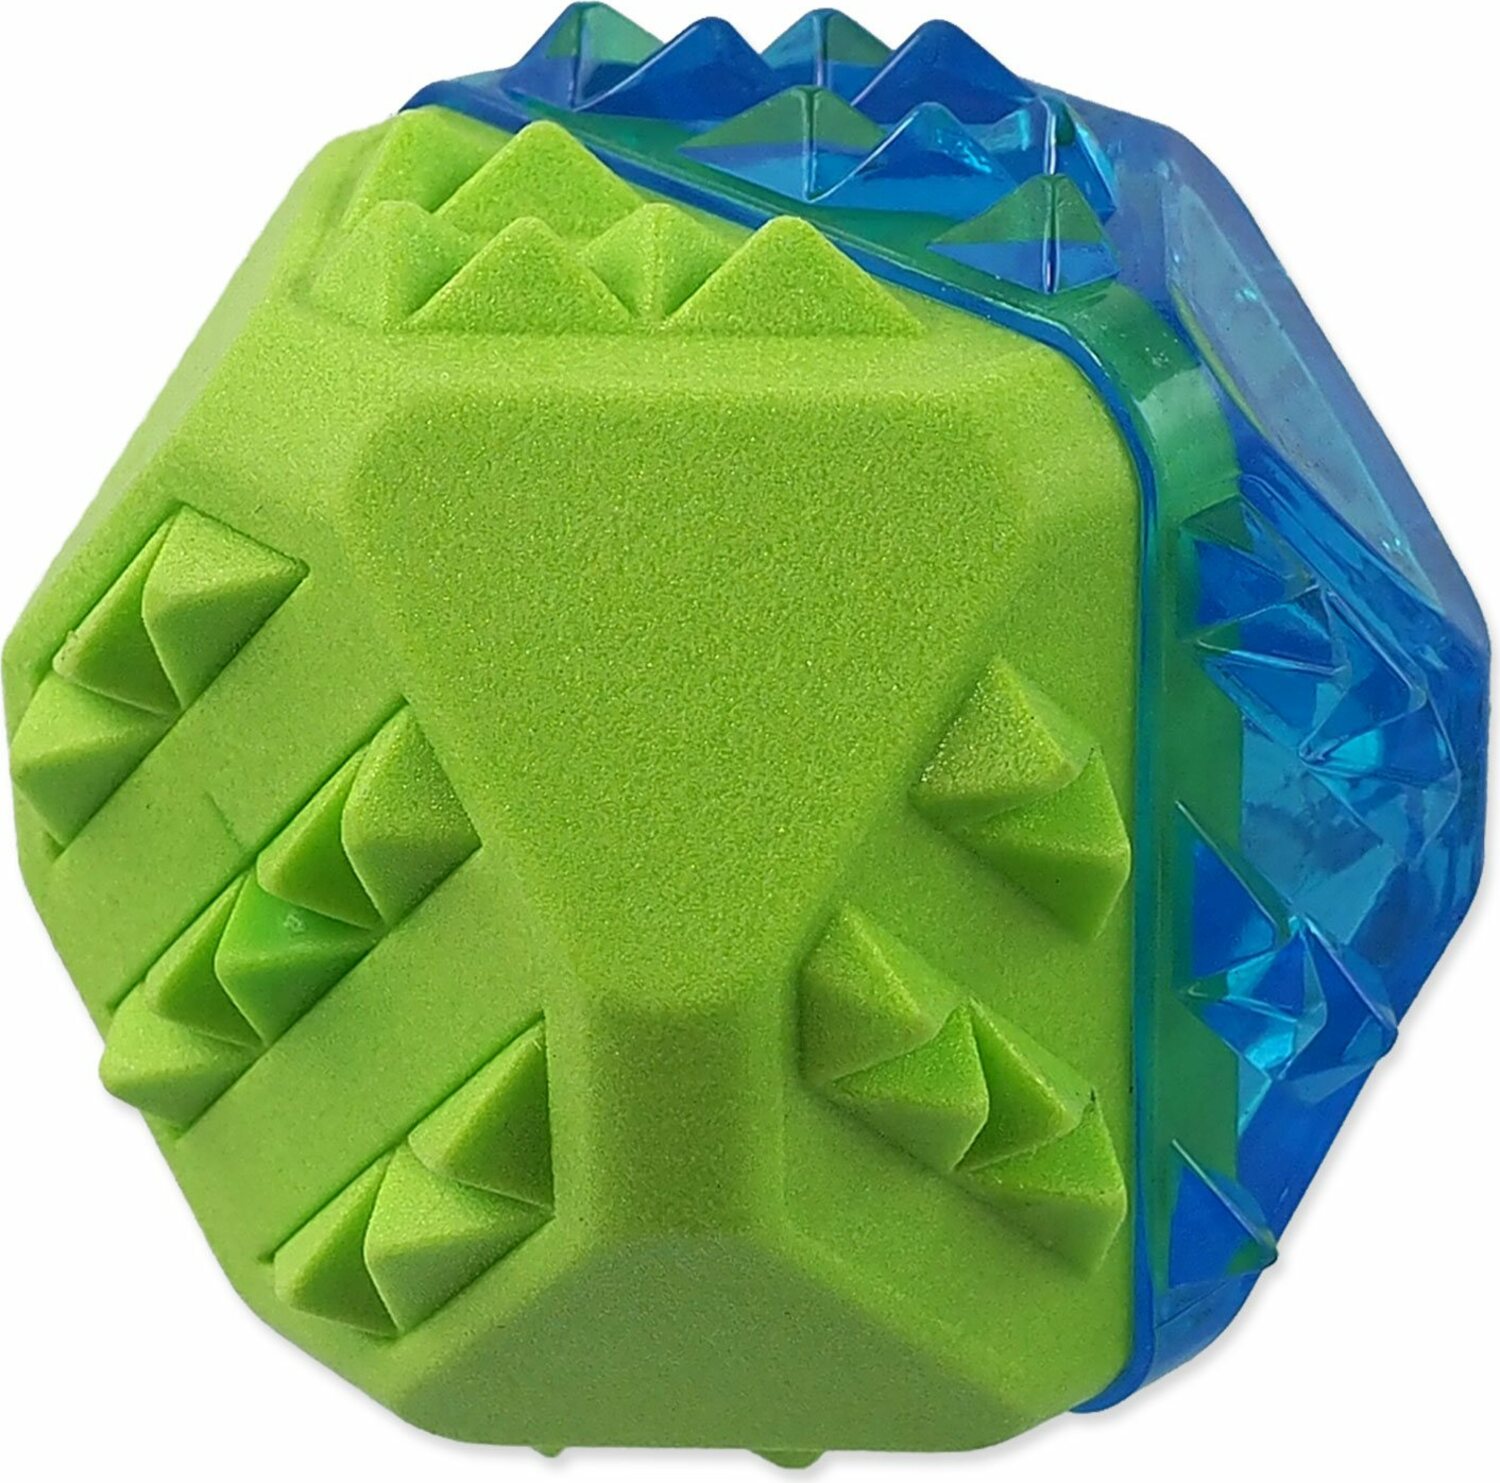 Hračka Dog Fantasy míč chladící zeleno-modrá 7,7cm